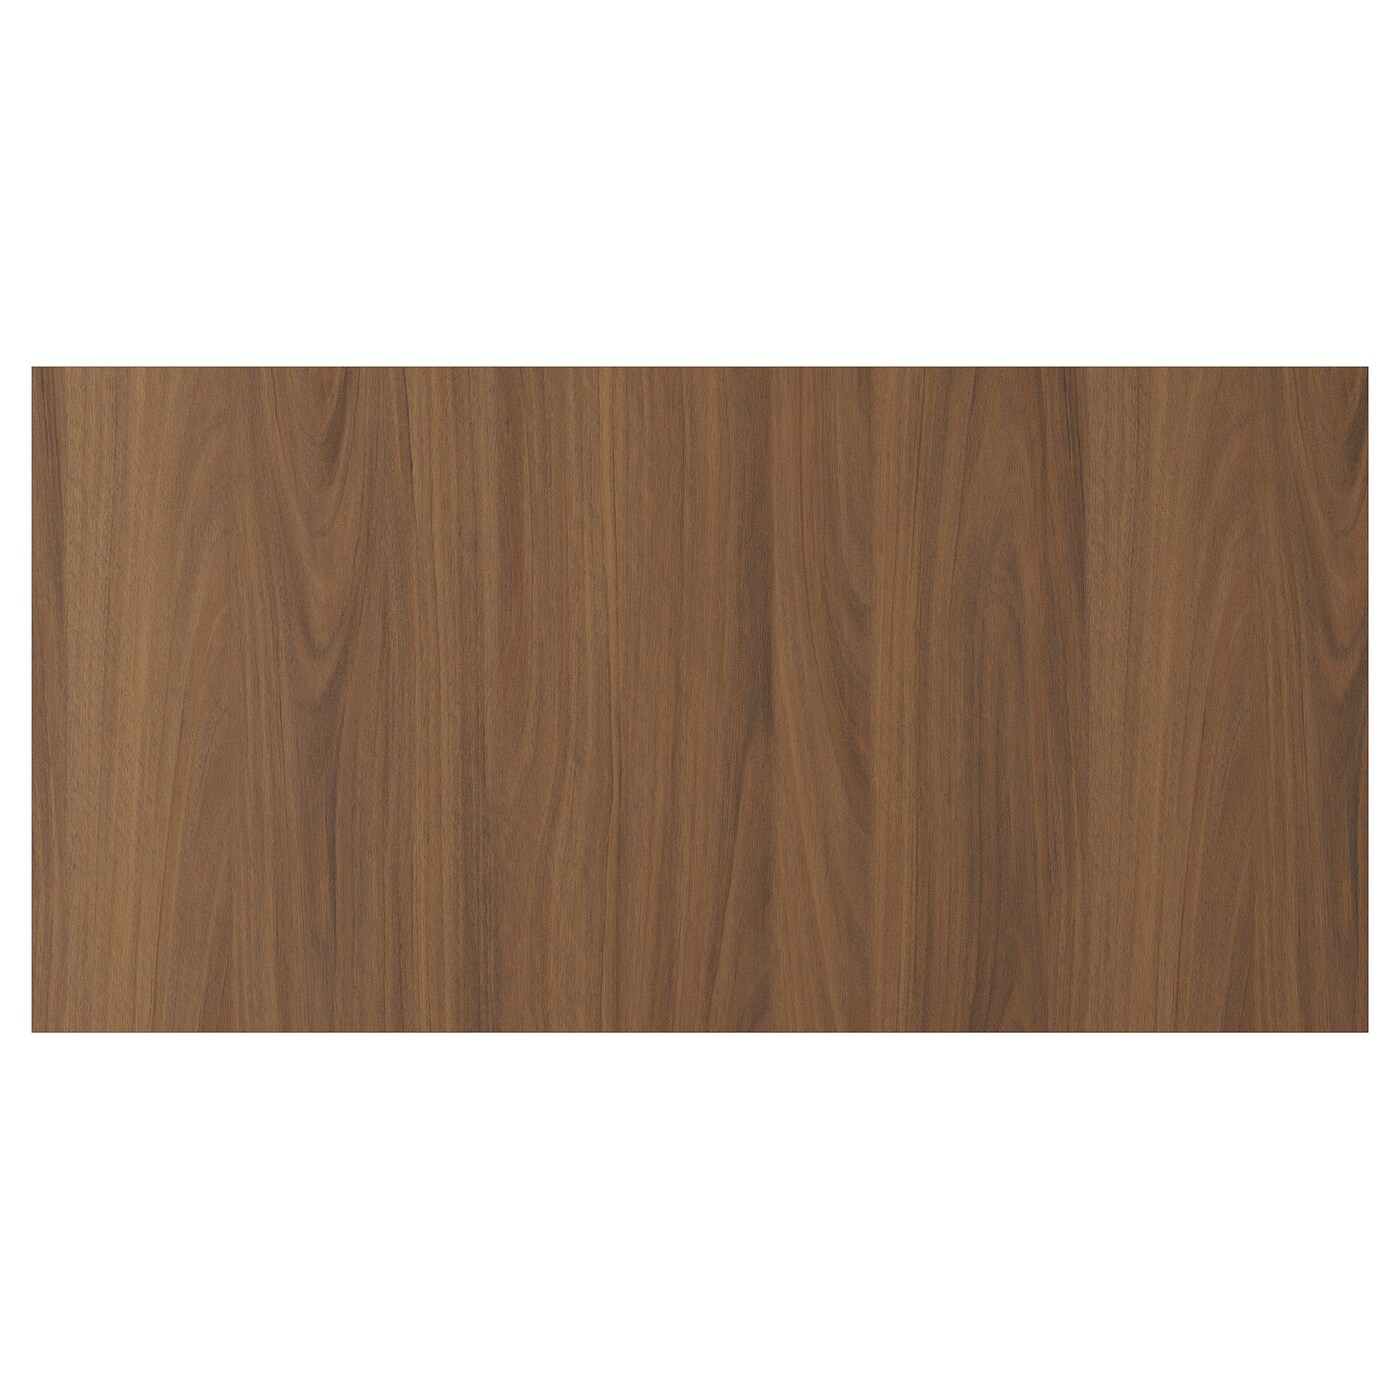 Дверца  - TISTORP IKEA/ ТИСТОРП ИКЕА,  80х40 см, коричневый